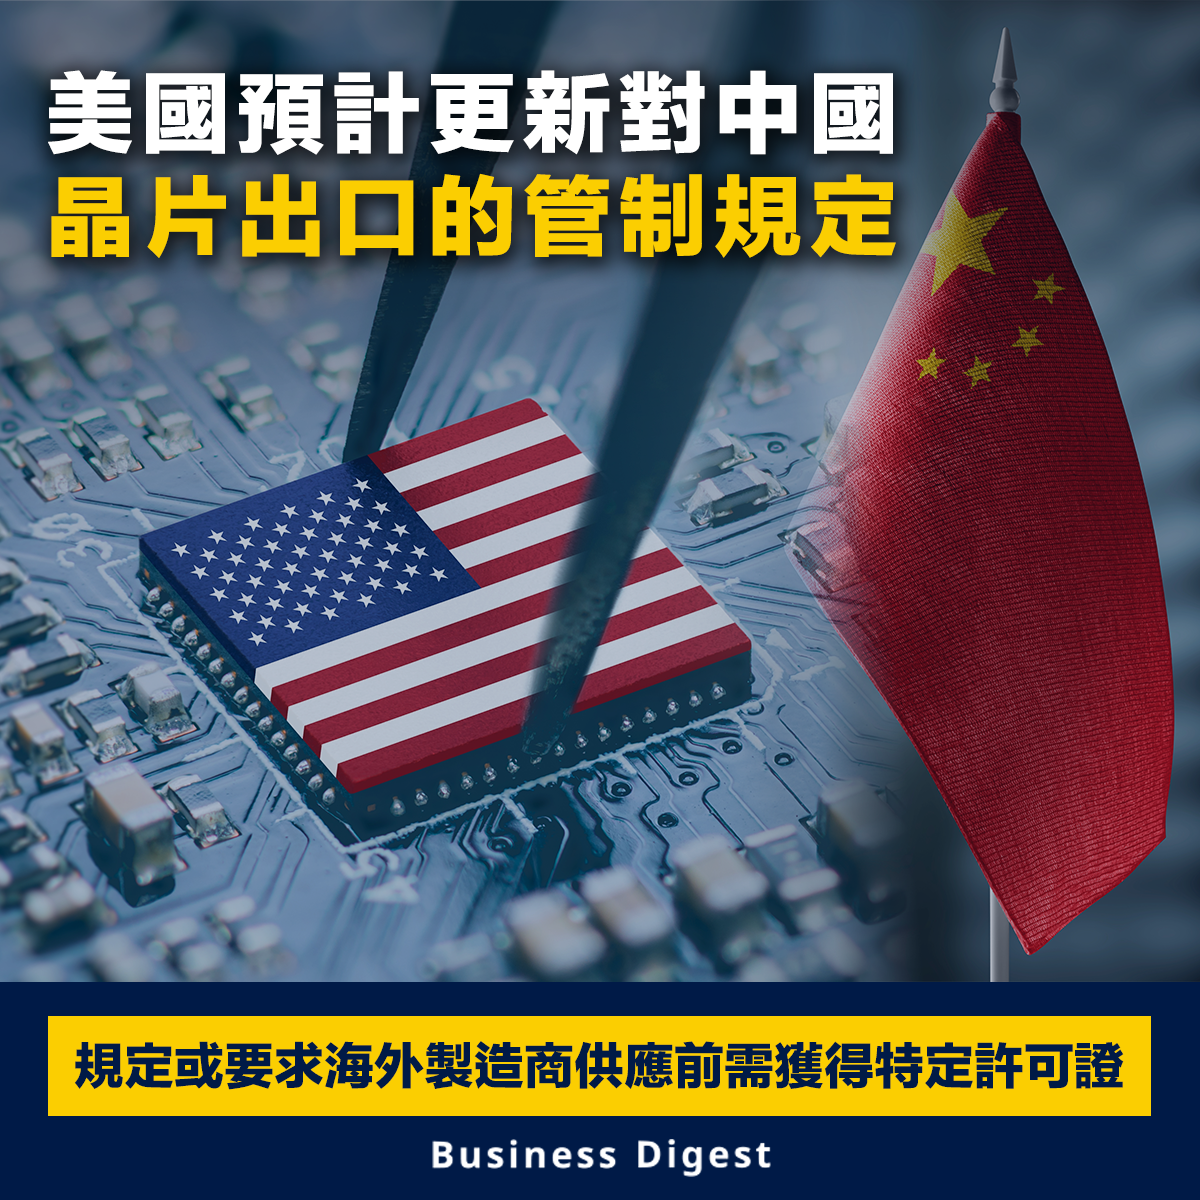 【芯片大戰】美國預計更新對中國晶片出口的管制規定